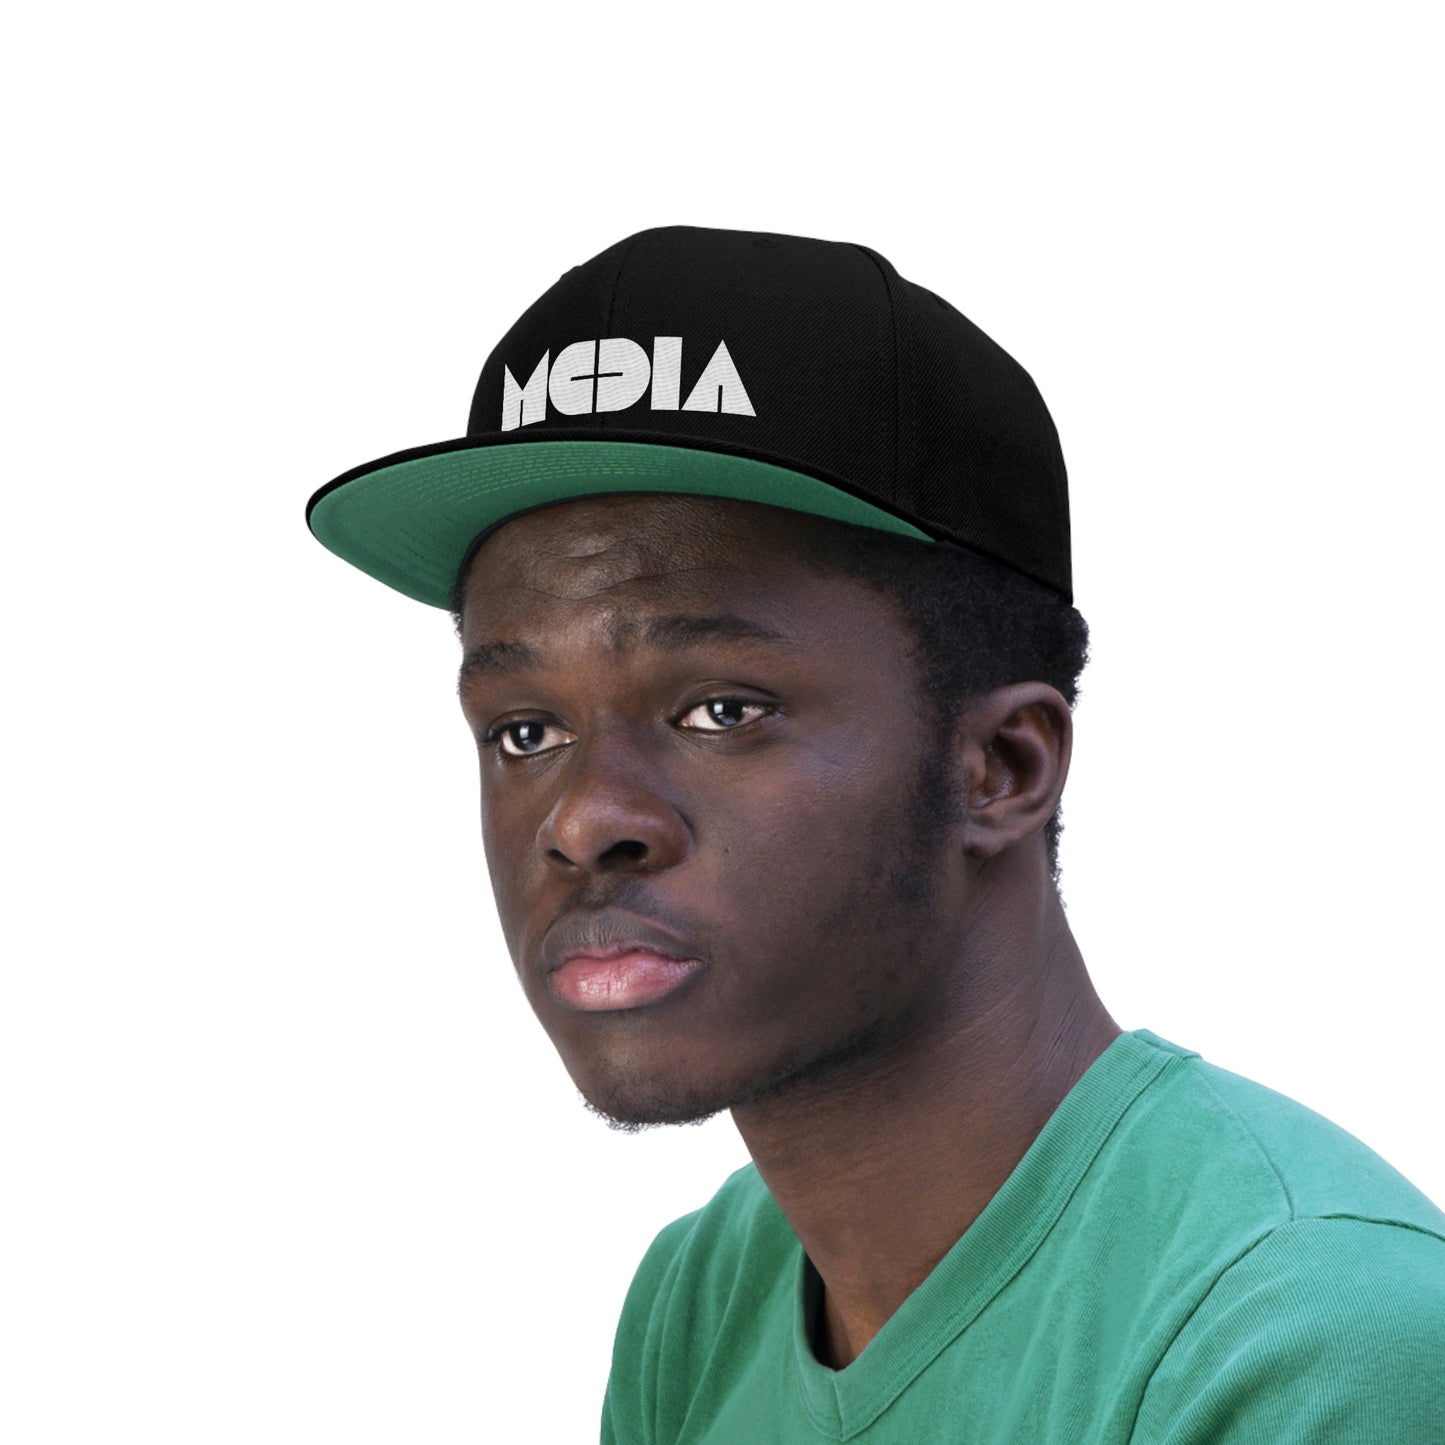 Media Logo Flat Bill Hat